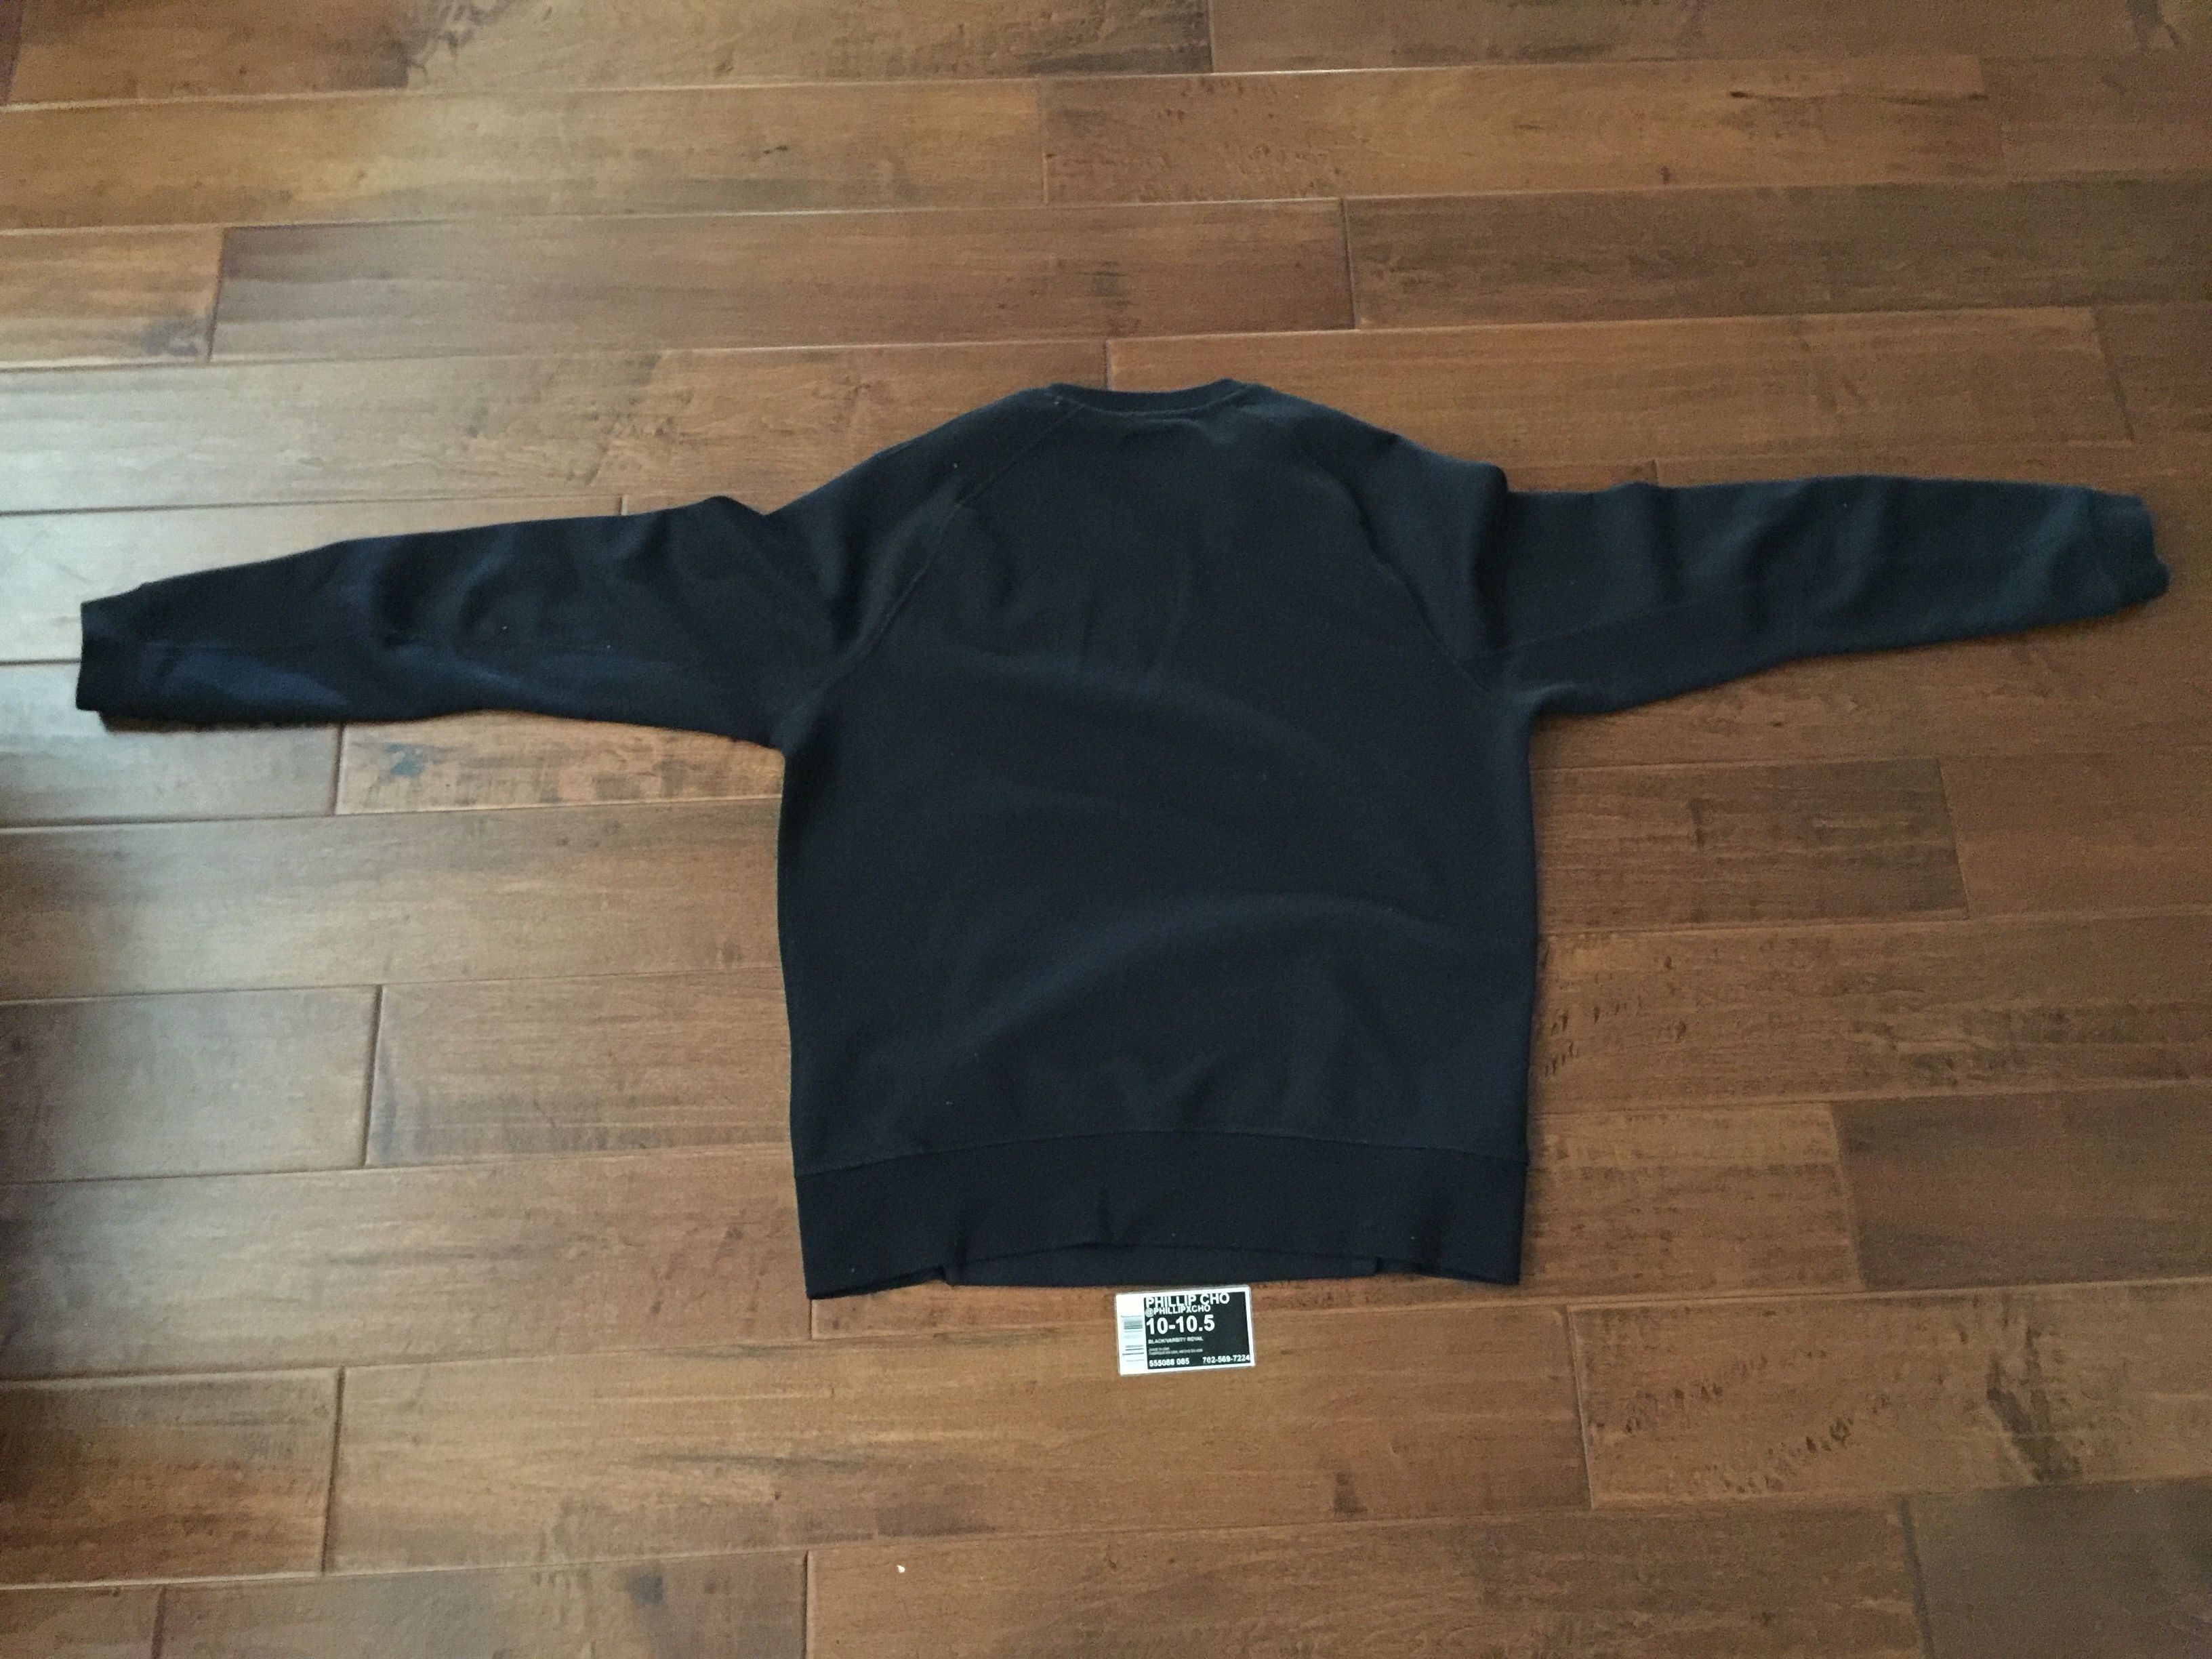 Nike Nike Tech Fleece Sweatshirt Size US M / EU 48-50 / 2 - 2 Preview